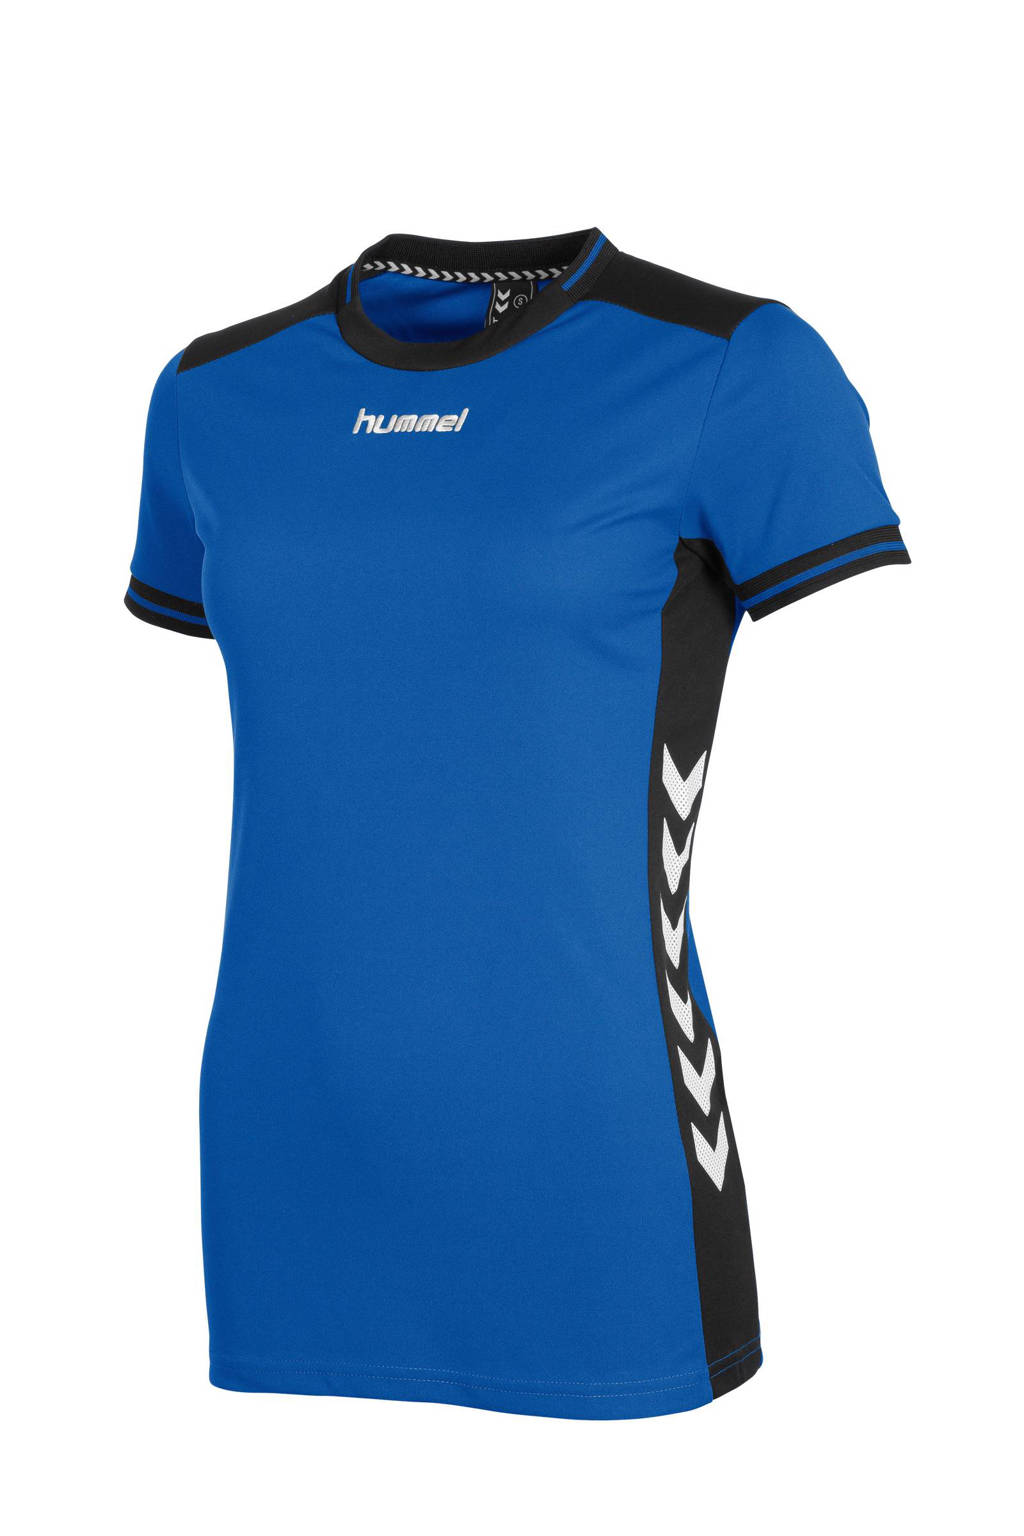 Blauw en zwarte dames hummel sport T-shirt van polyester met meerkleurige print, korte mouwen en ronde hals